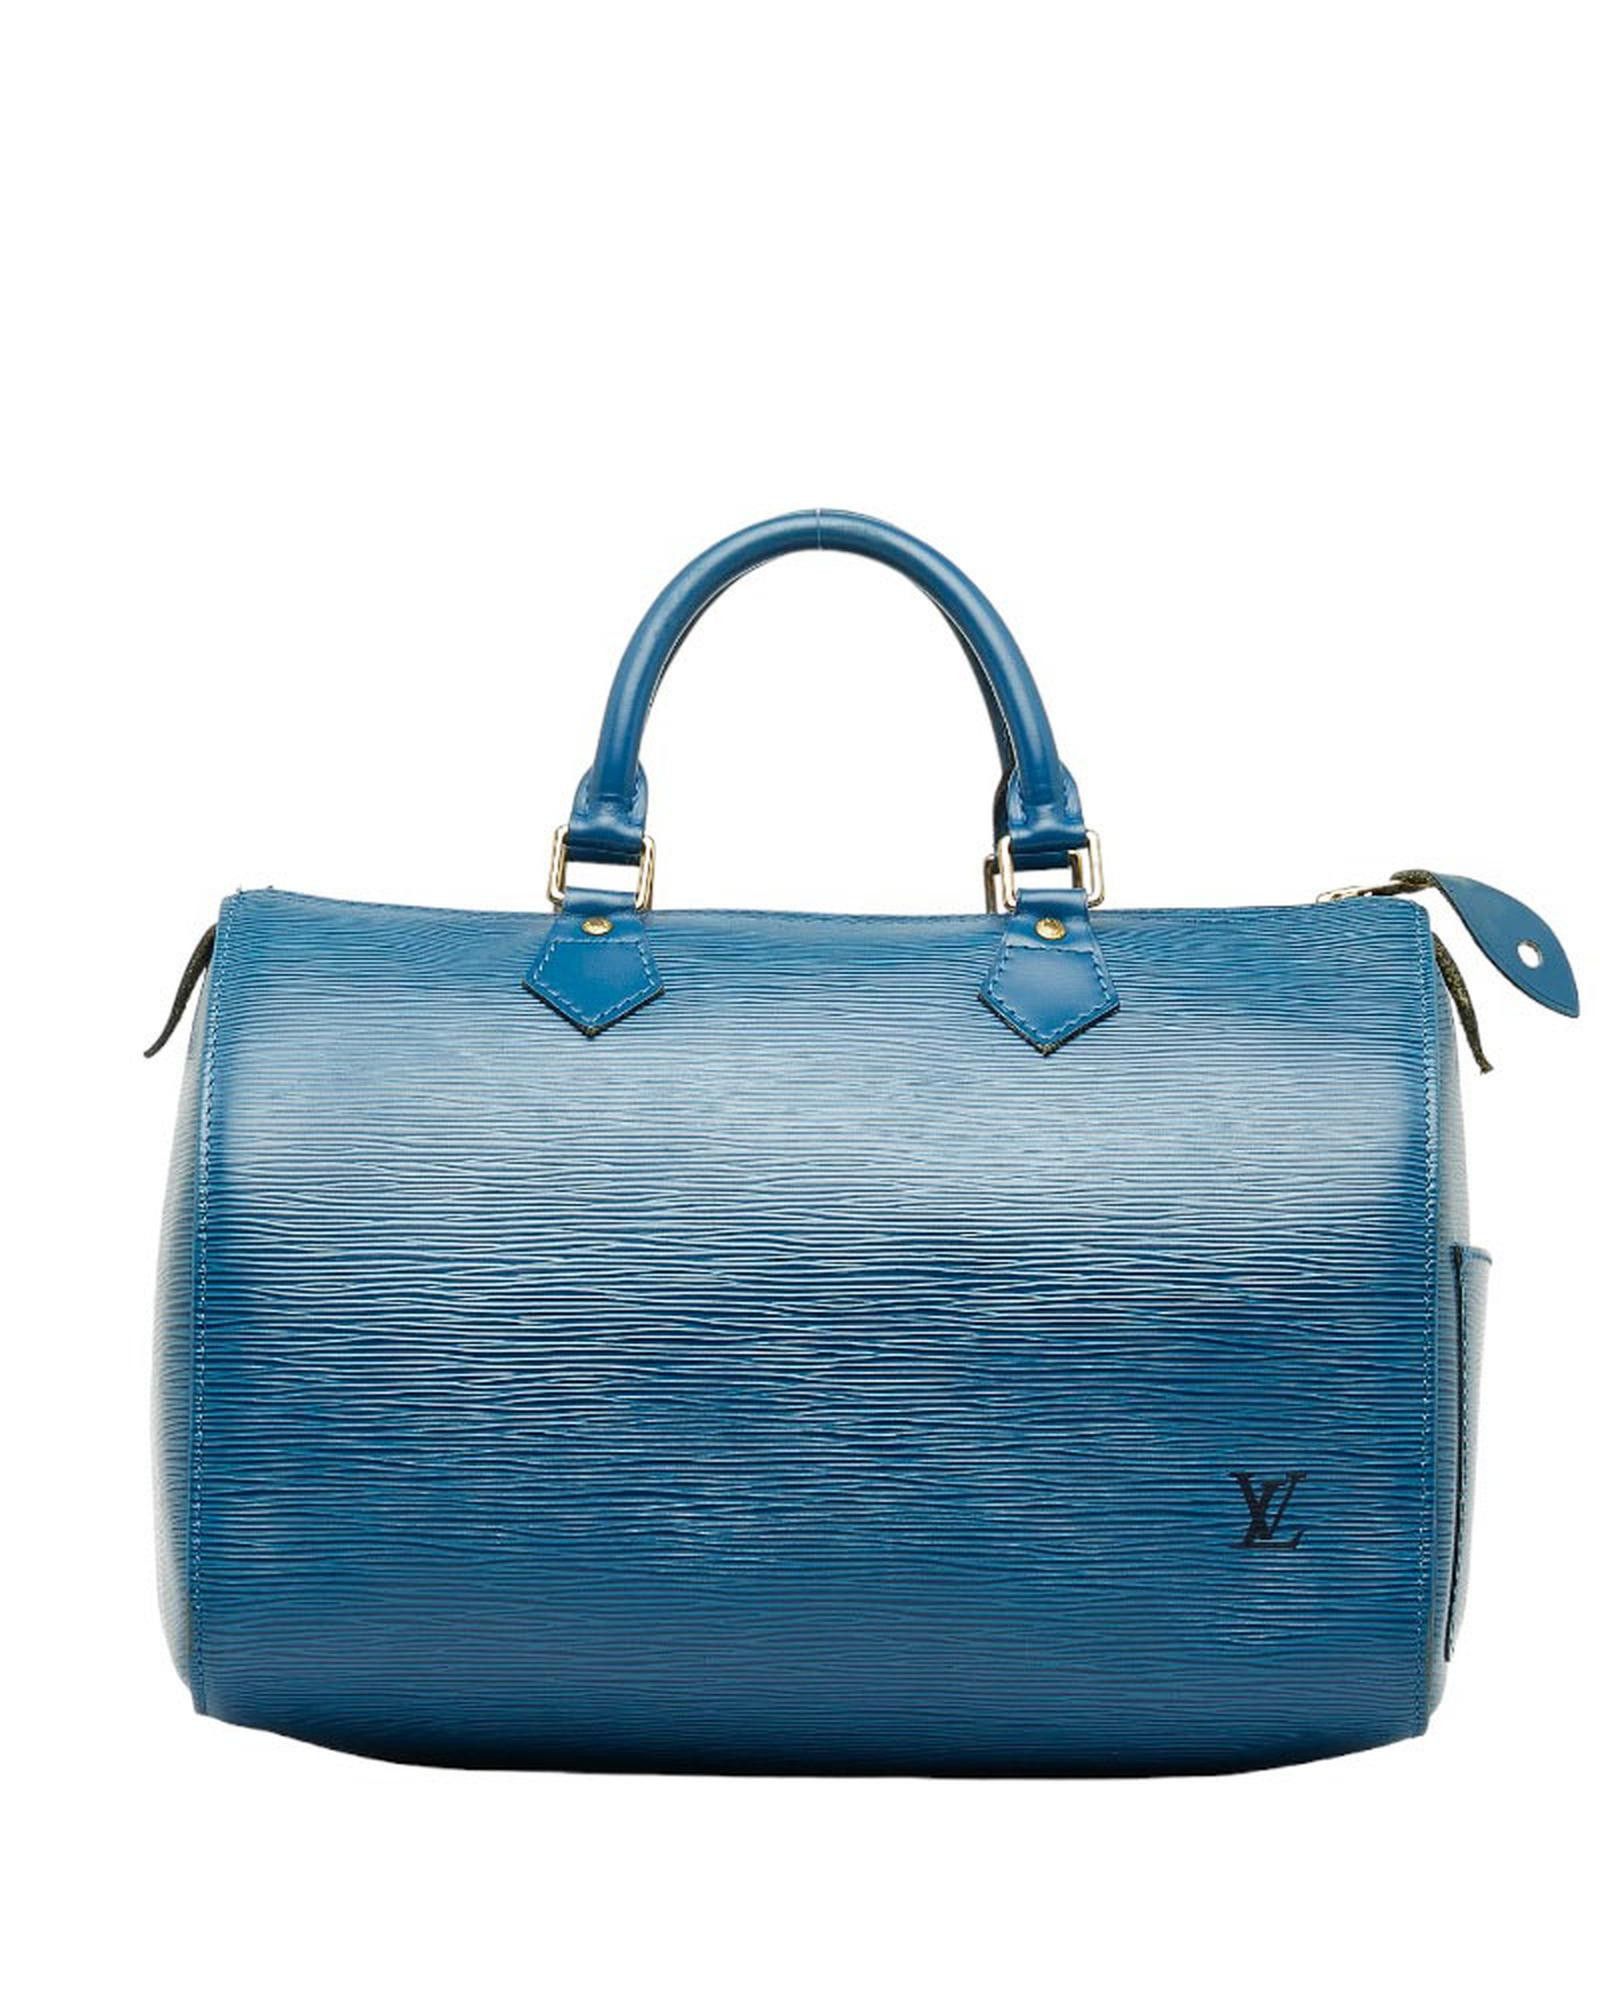 Louis-Vuitton-Epi-Speedy-25-Hand-Bag-Castilian-Red-M43017